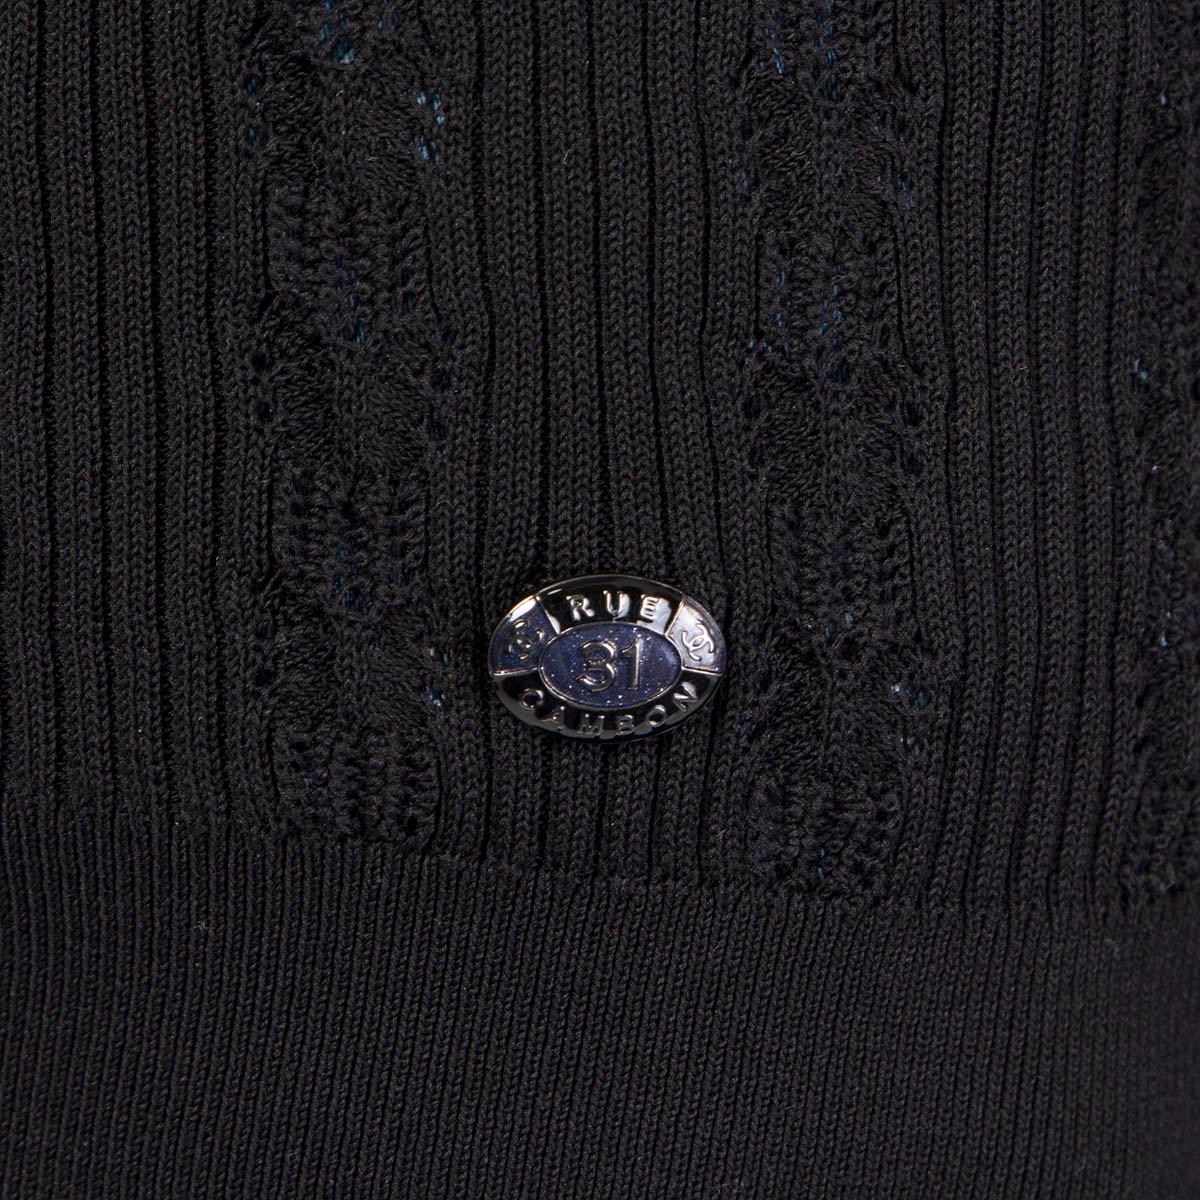 Women's CHANEL black cotton RIB KNIT POINTELLE Tank Top Shirt 38 S